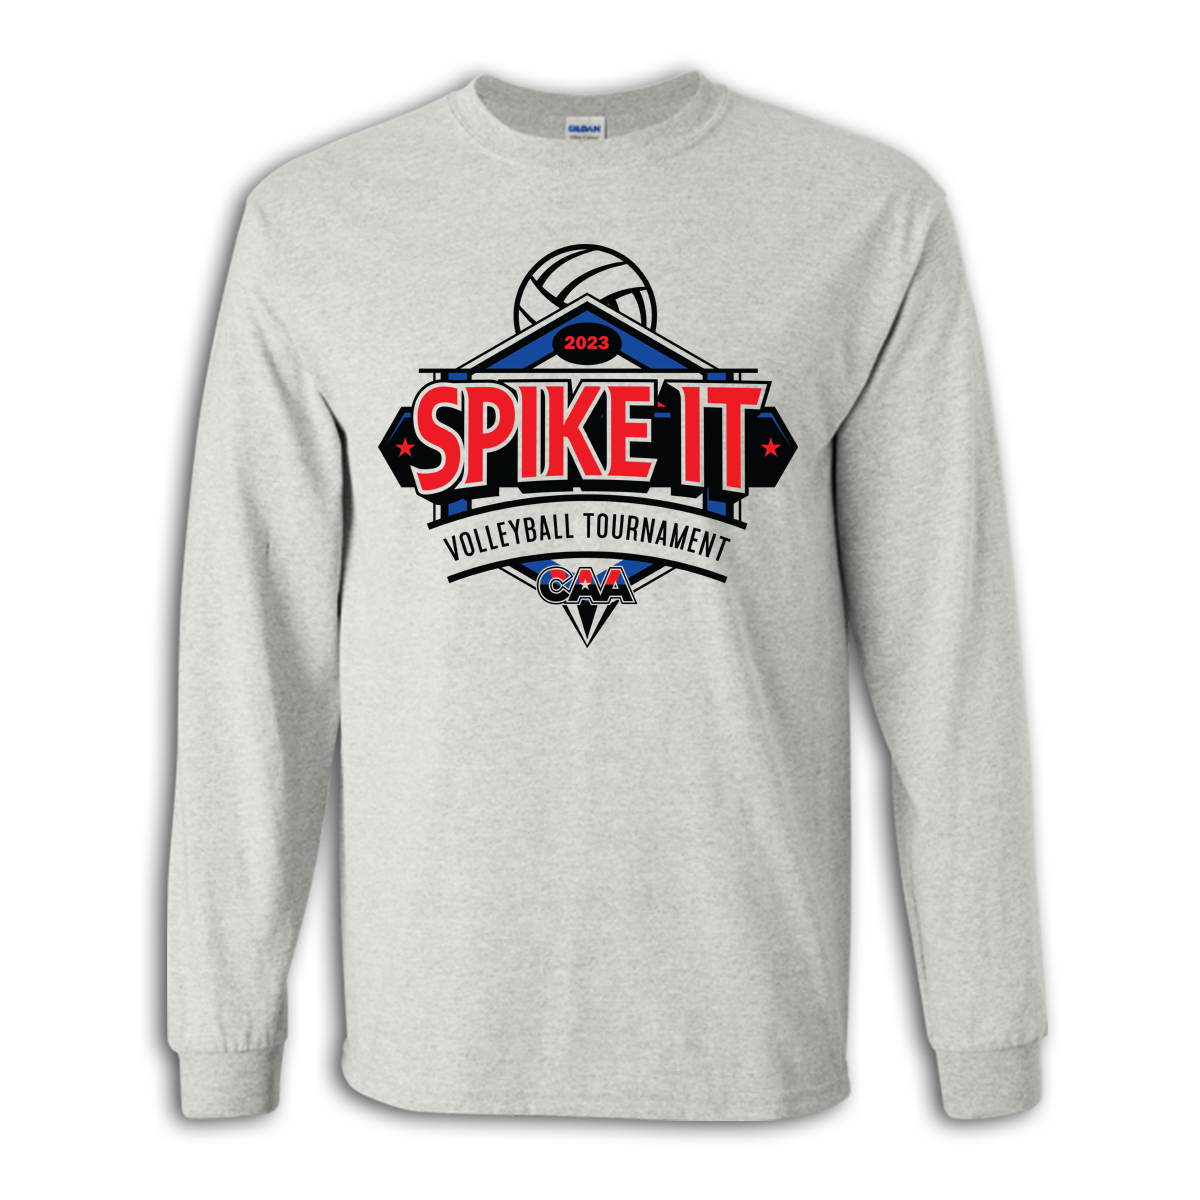 2023 CAA Spike It Tournament Volleyball Long Sleeve Shirt